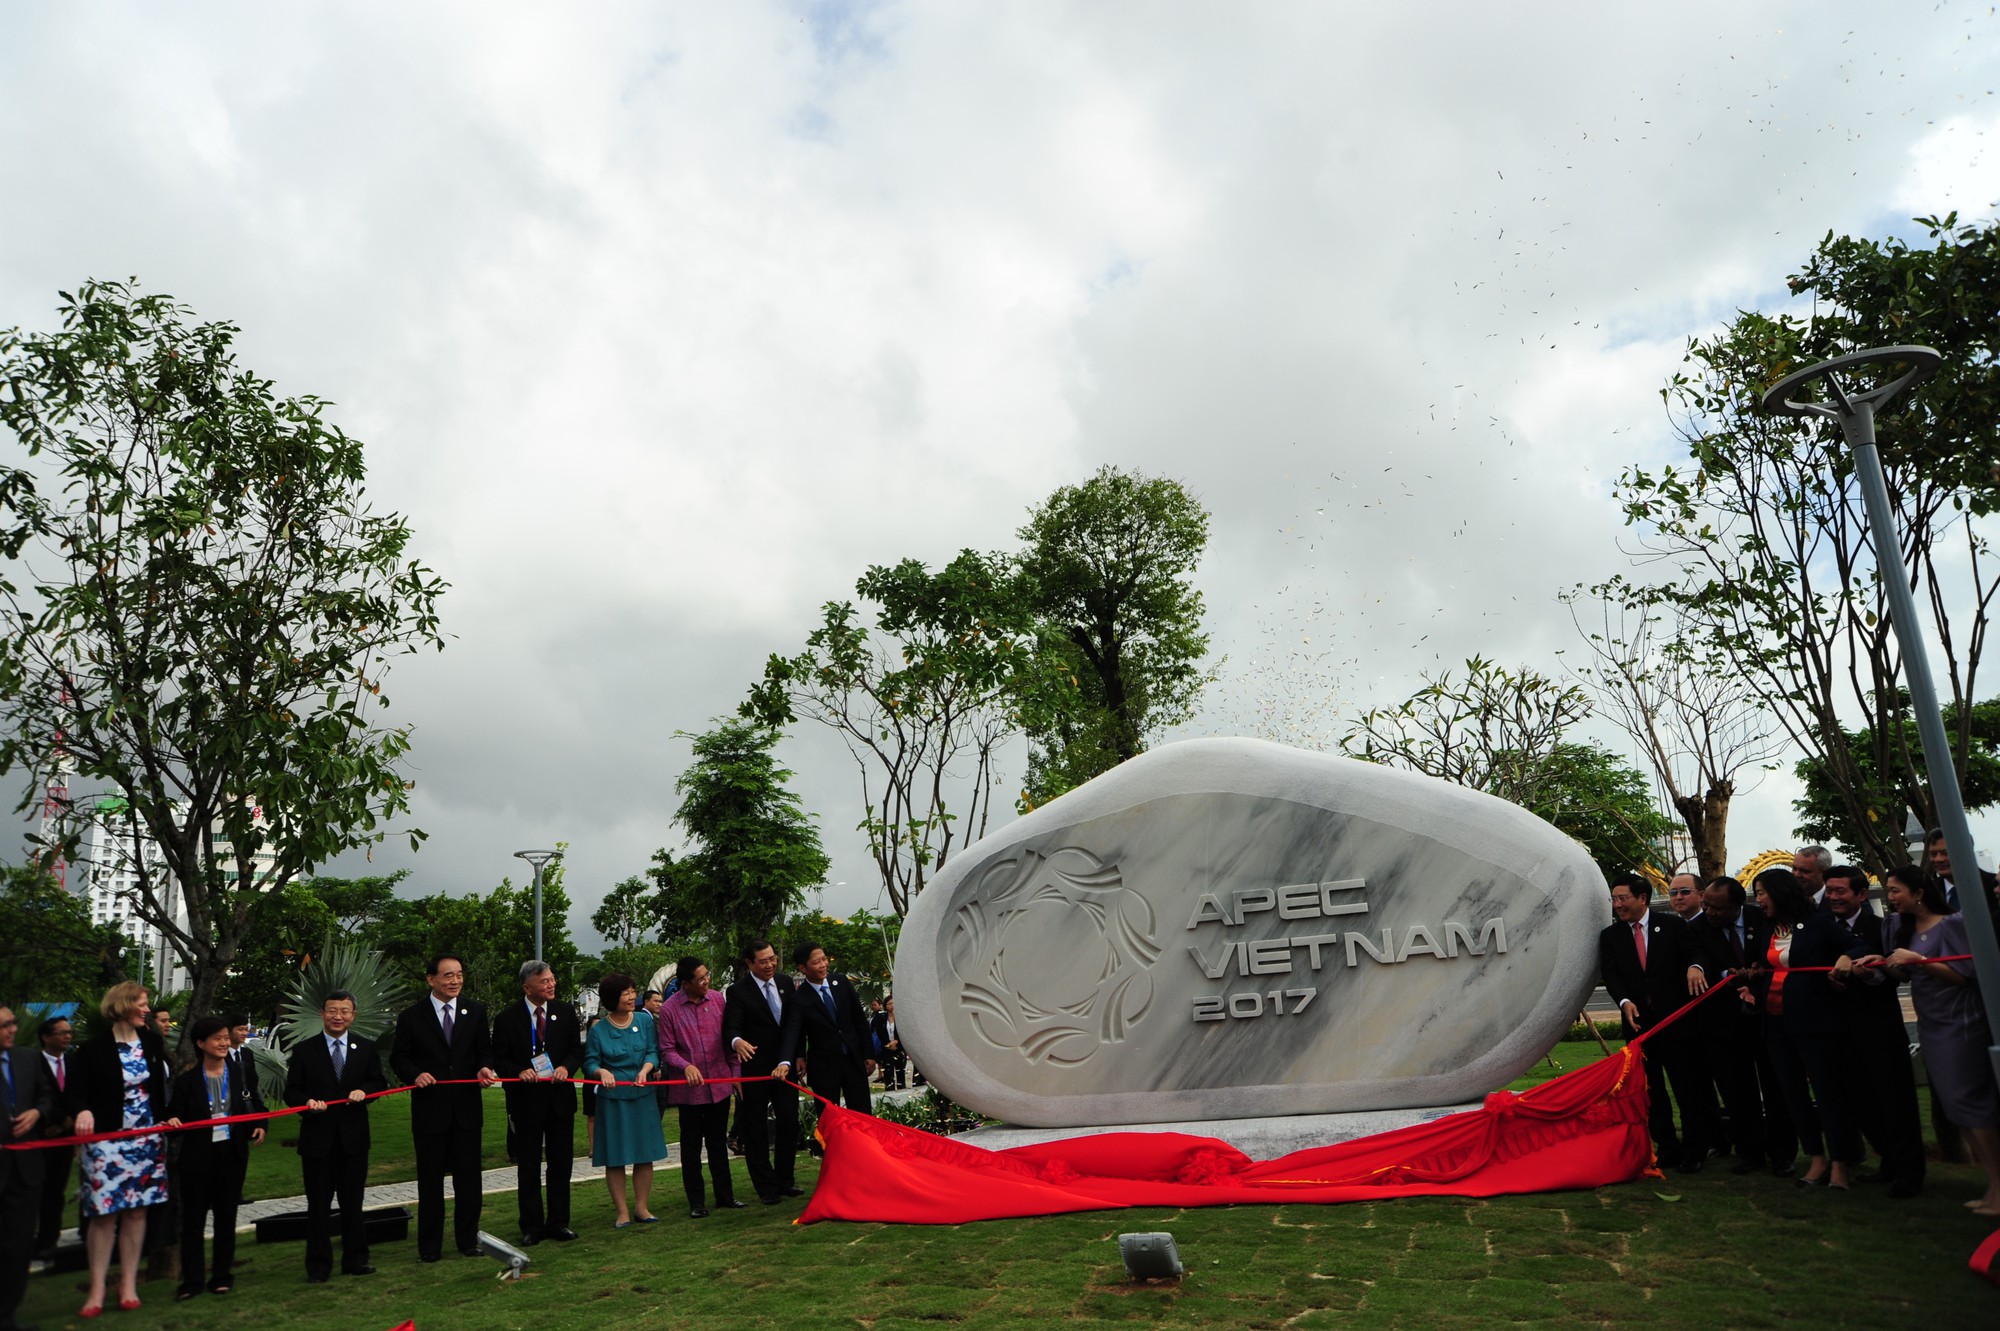 Mở cửa Công viên APEC ở Đà Nẵng